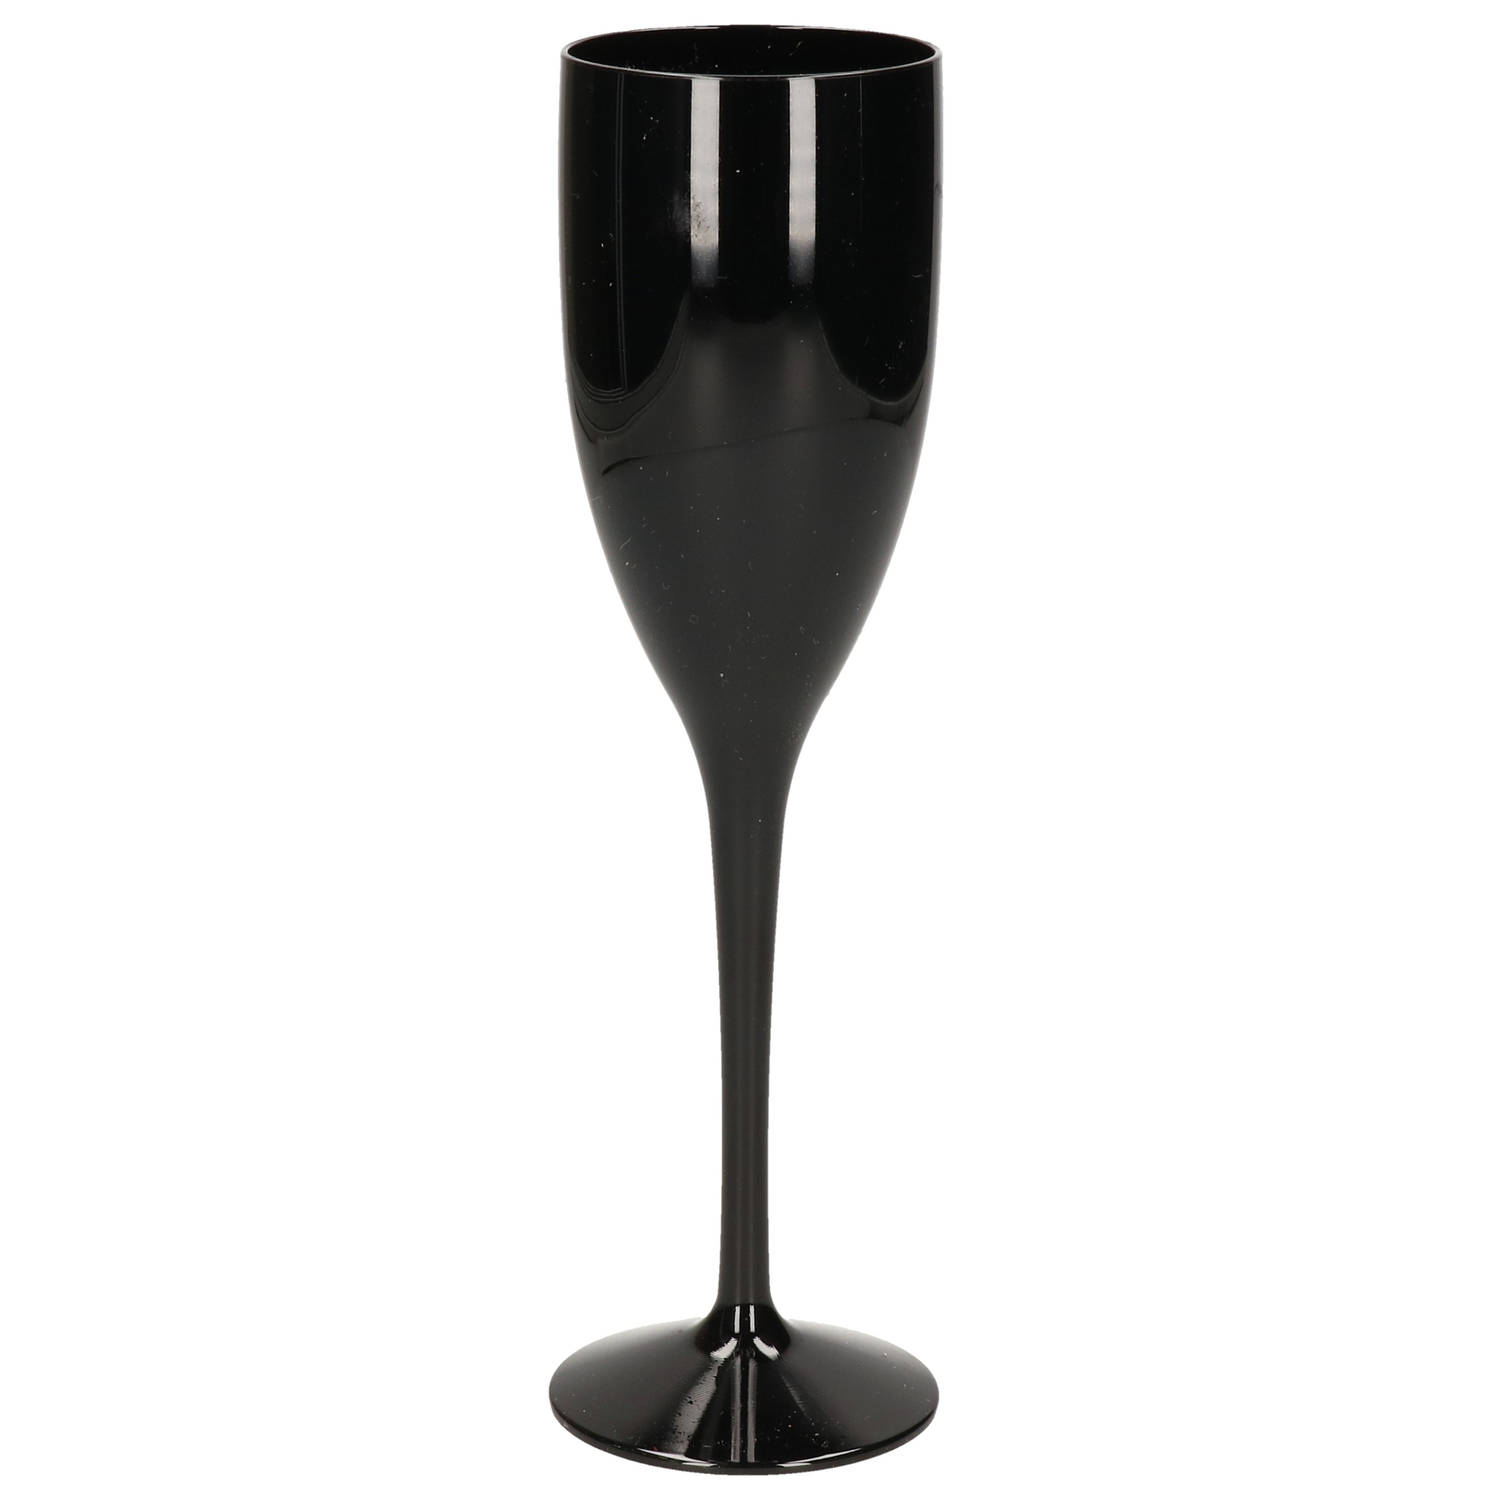 Onbreekbaar champagne/prosecco flute glas zwart kunststof 15 cl/150 ml - Champagneglazen